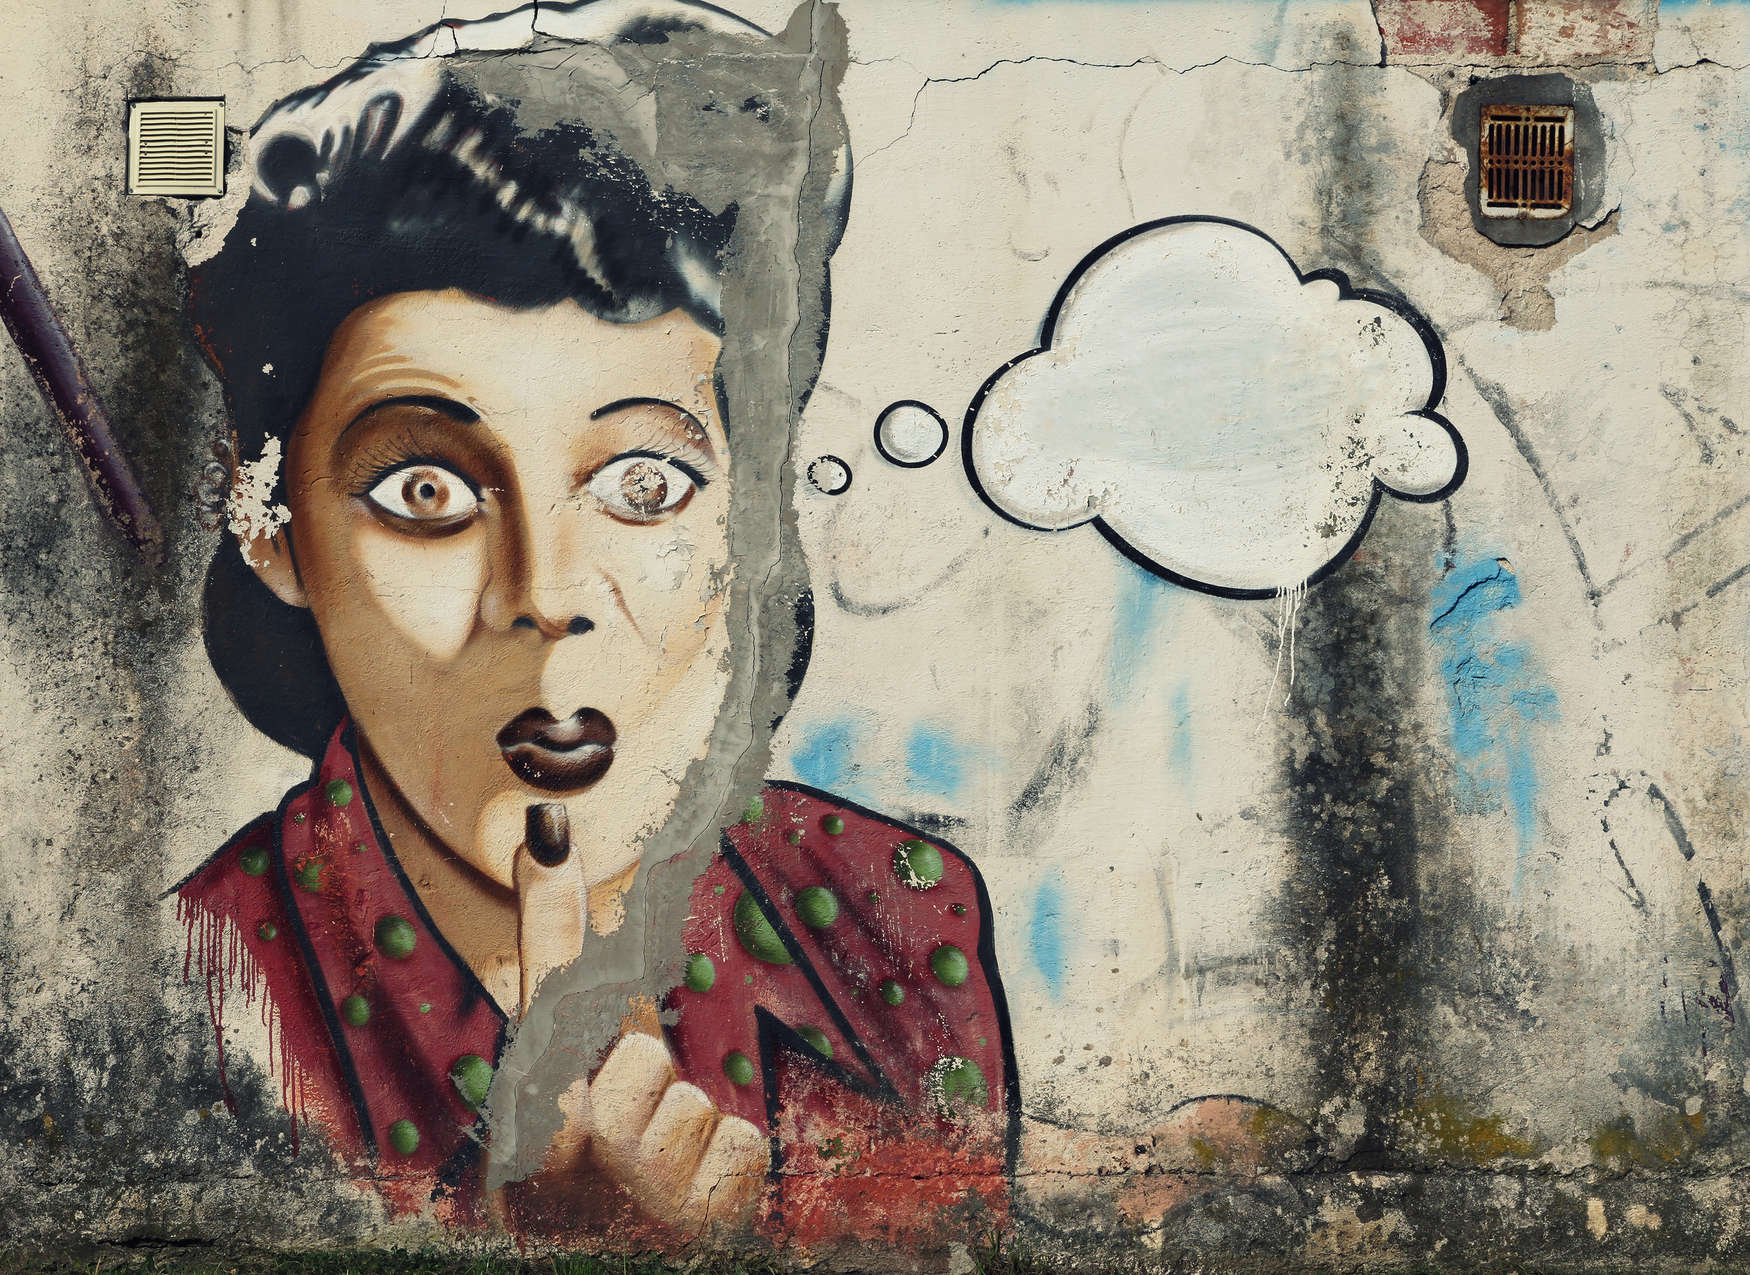             Mural Mujer con burbuja de pensamiento como grafiti en la pared de piedra - Gris, Rojo, Blanco
        